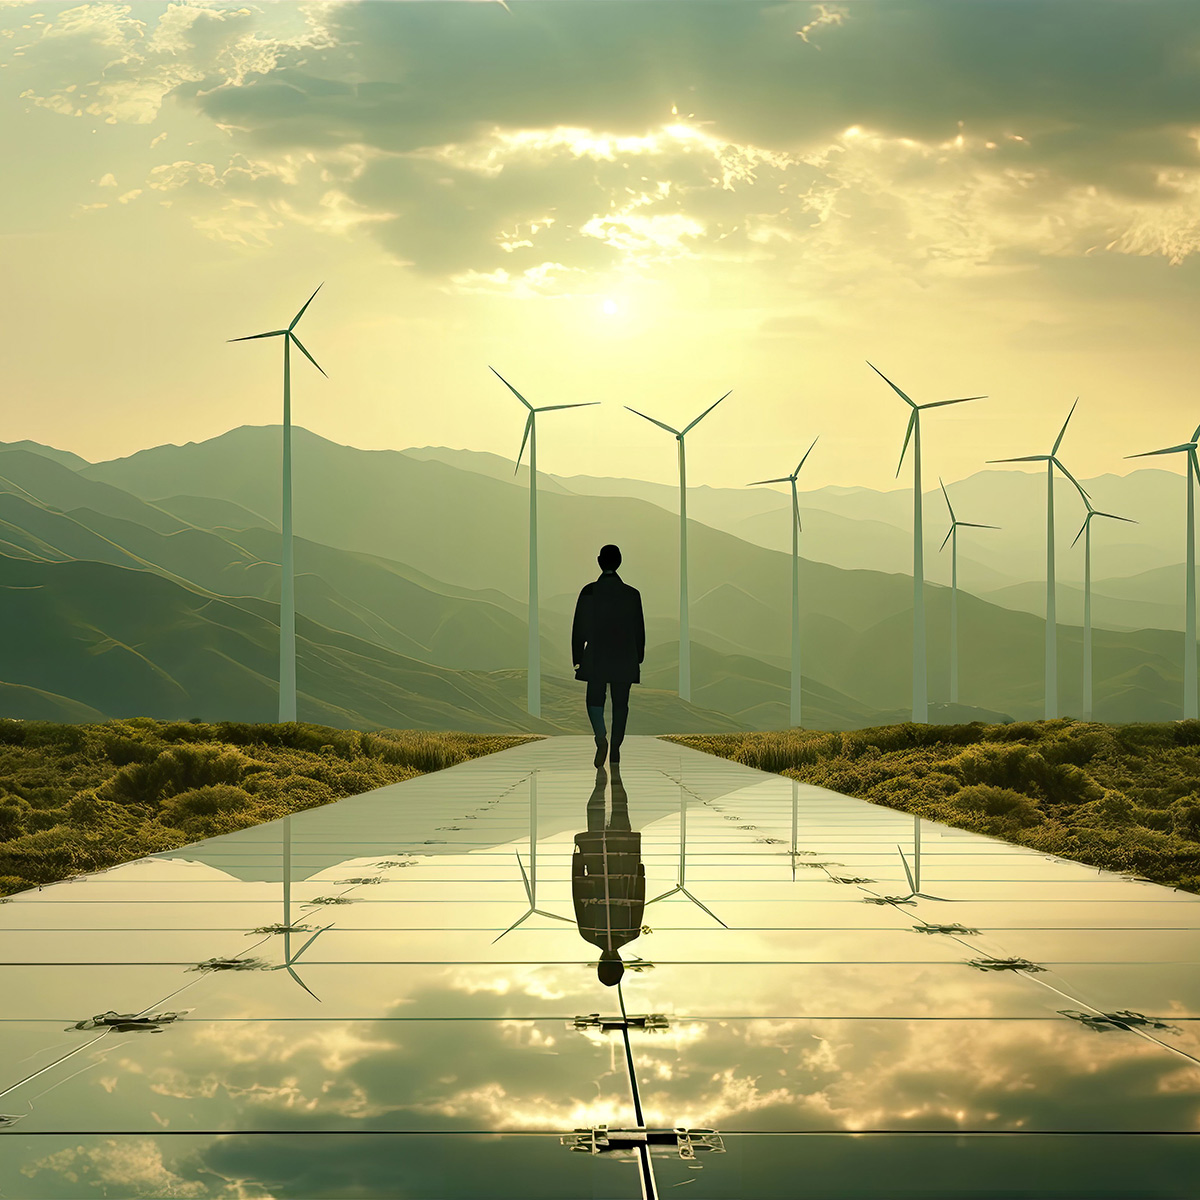 Stilisiertes Foto einer Person, welche über Solarpanele in Richtung einer hügeligen Landschaft geht - vor dieser Person befinden sich Windräder